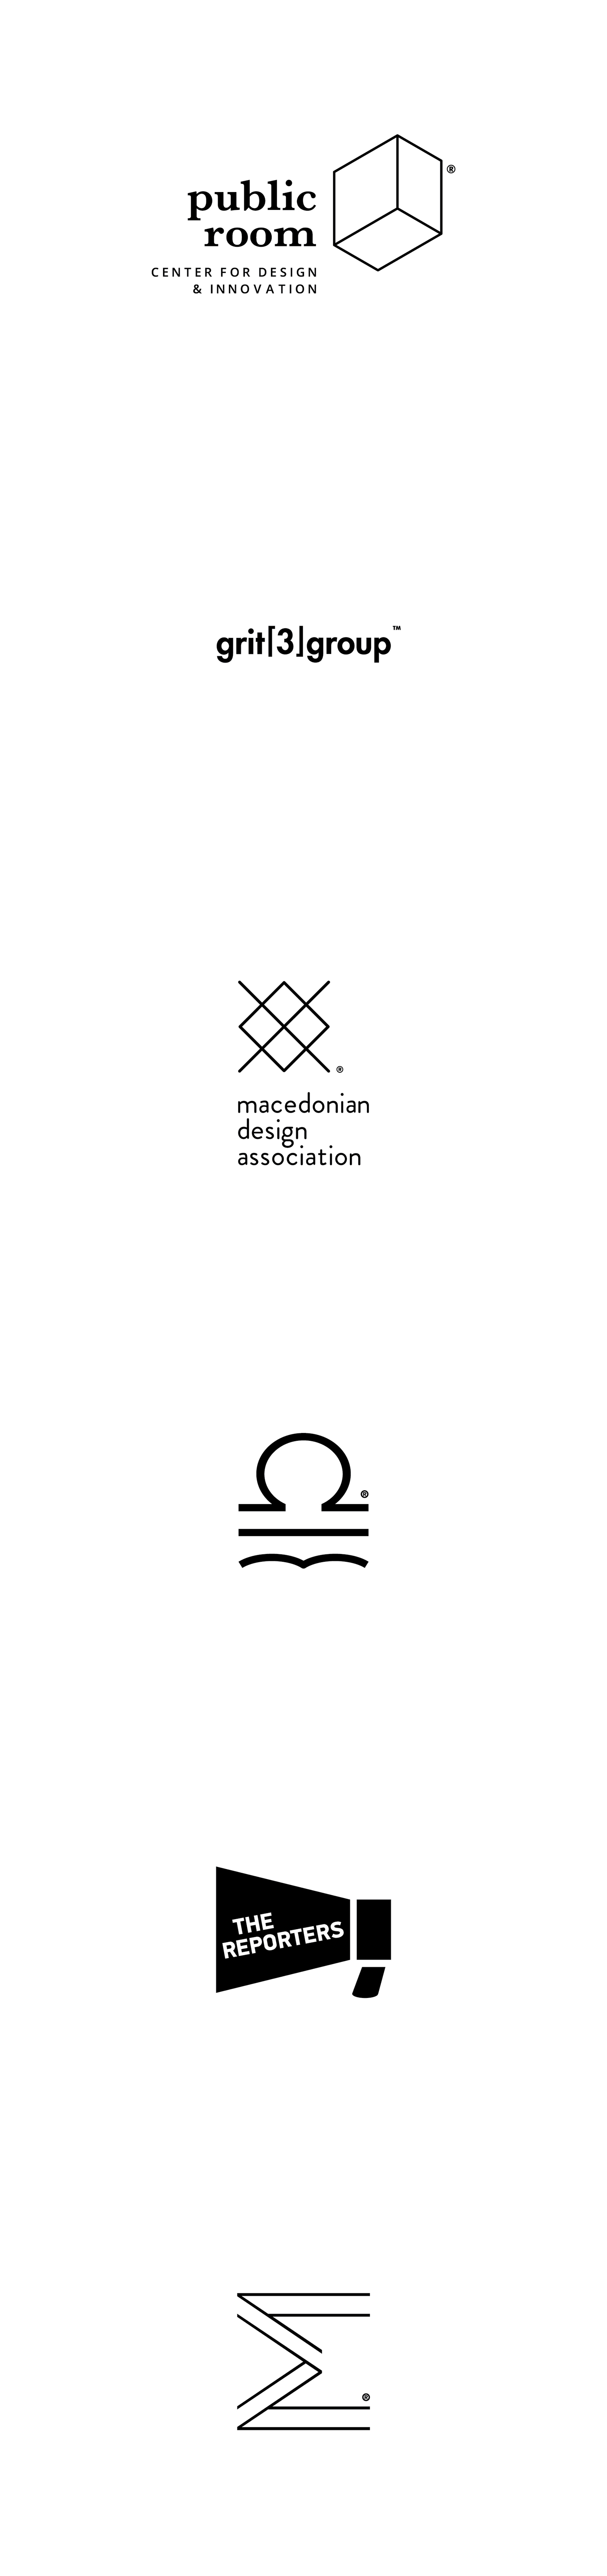 logo grit3group macedoniandesignassociation publicroom sigmamedia ethicscouncil thereporters black White minimal design